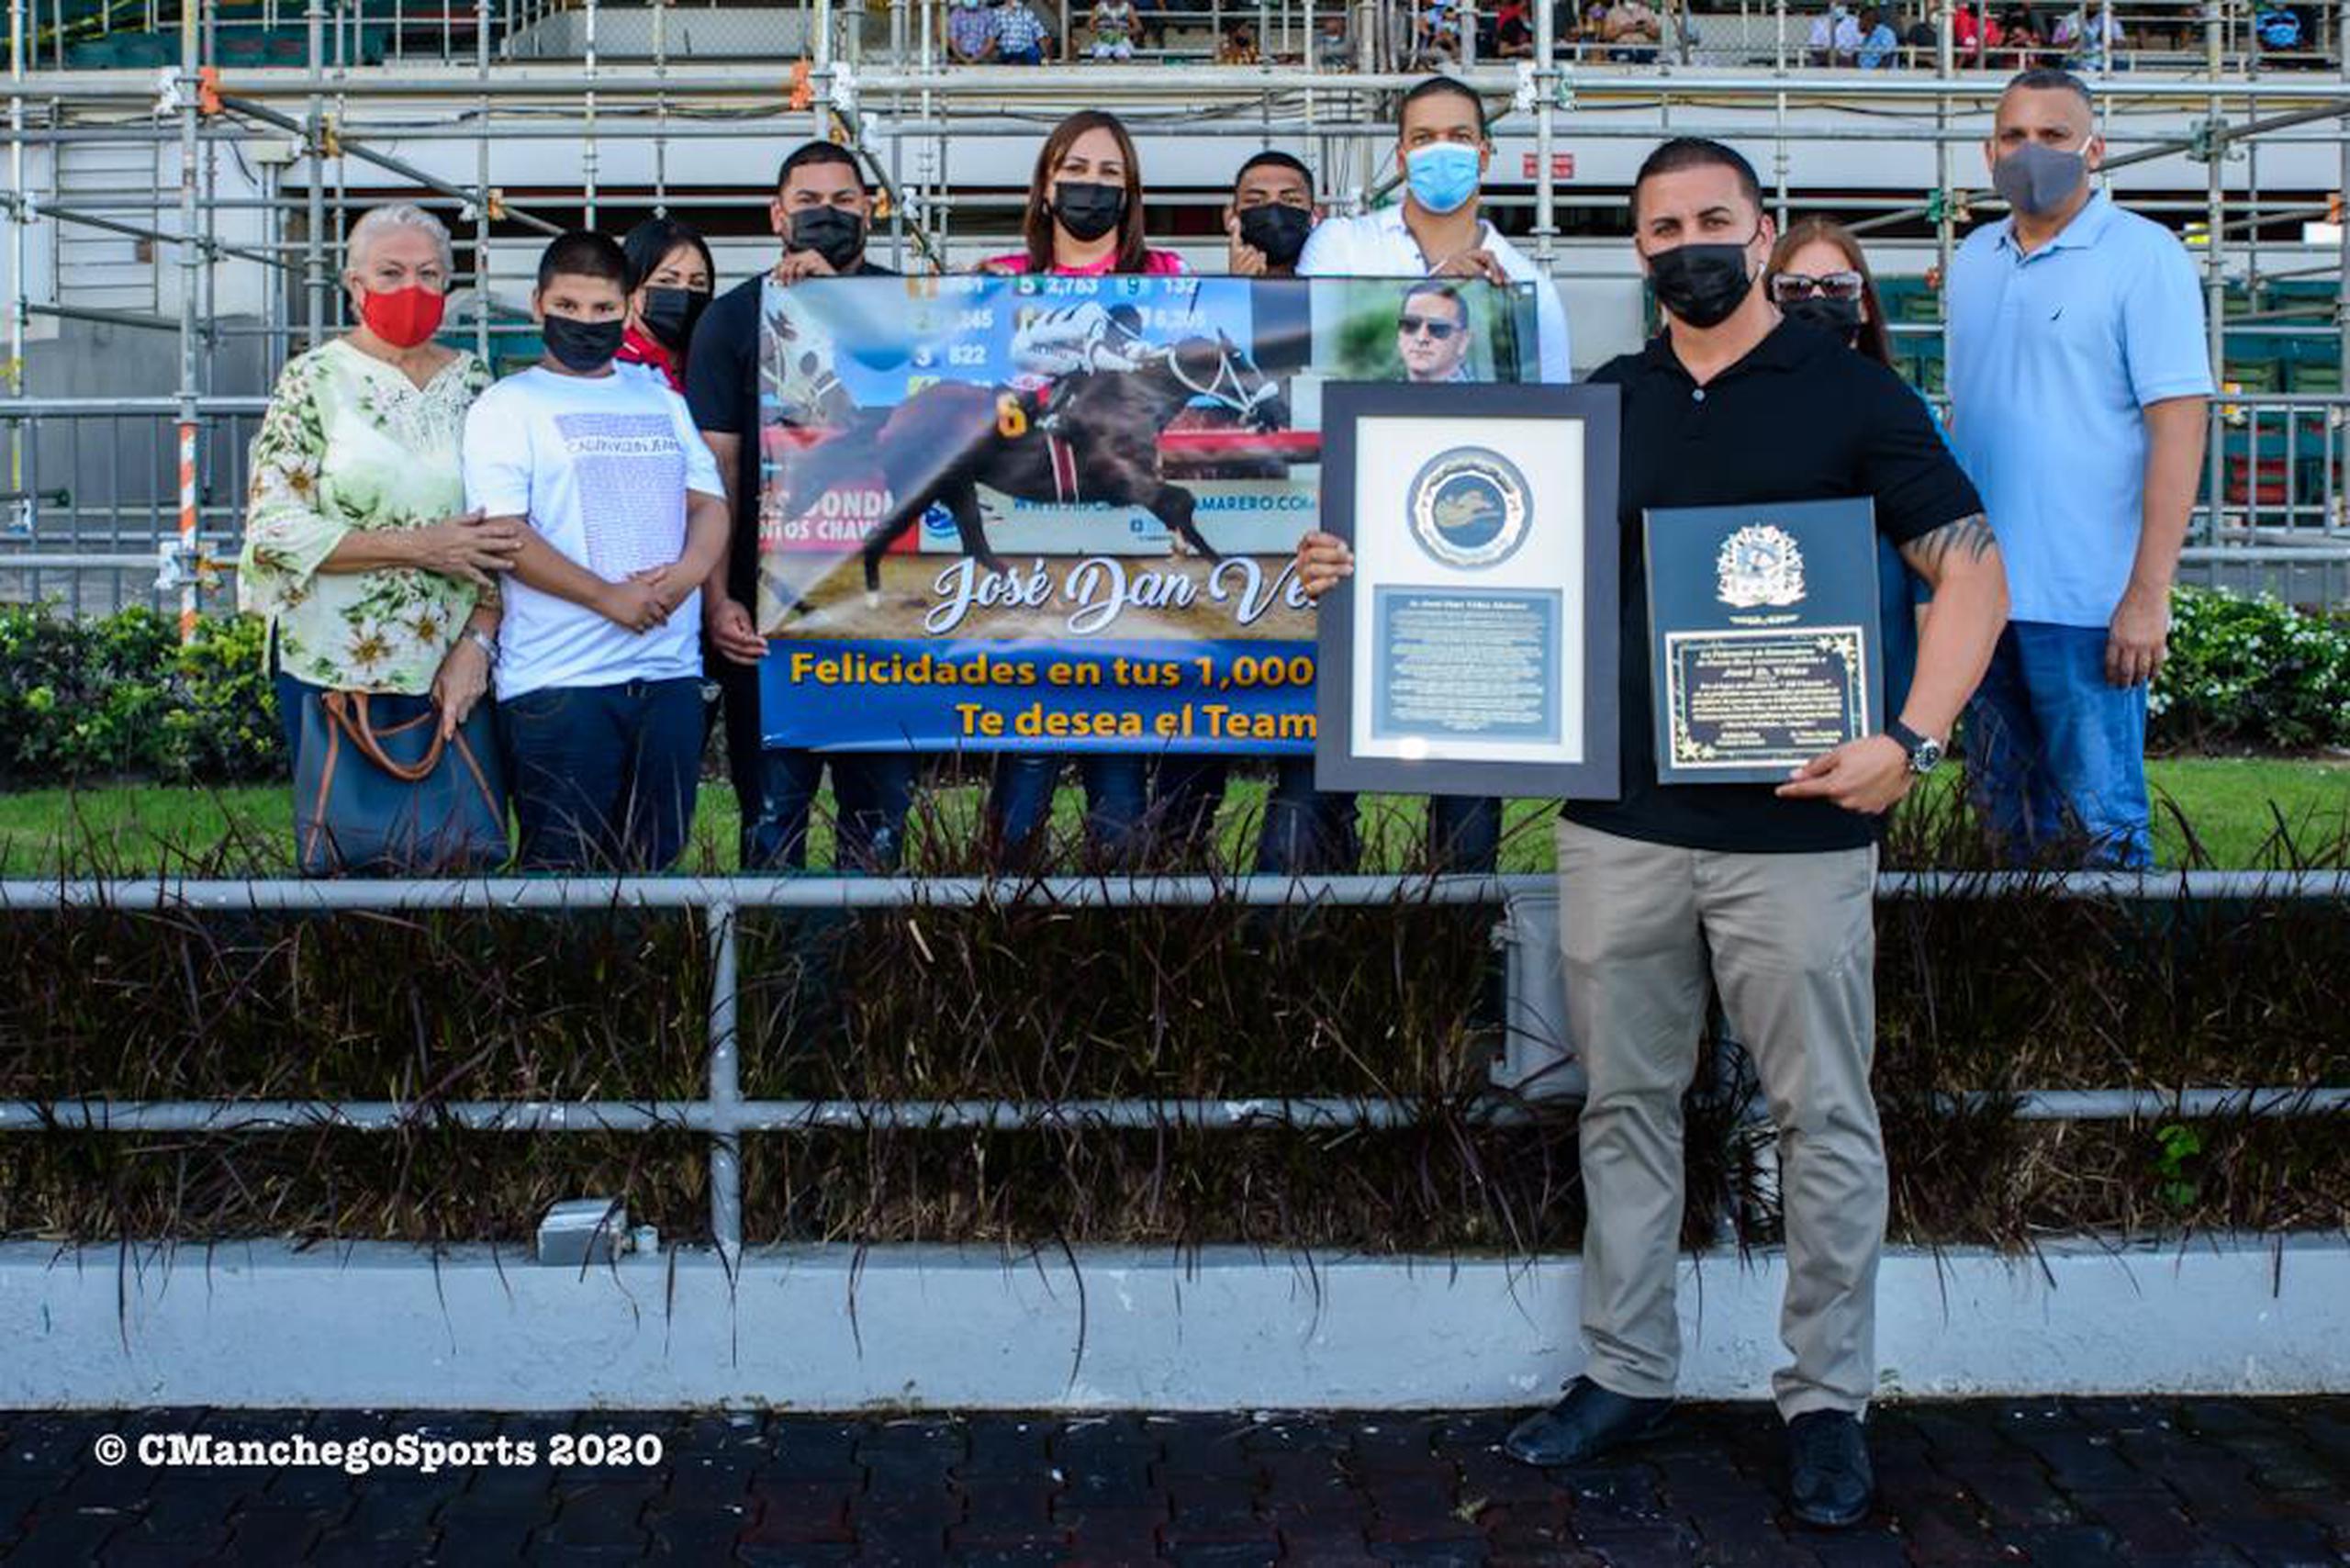 José Dan Vélez posa junto a familiares, equipo de trabajo, placas y recordatorios alusivos a su victoria 1,000 como entrenador en el hipódromo Camarero.